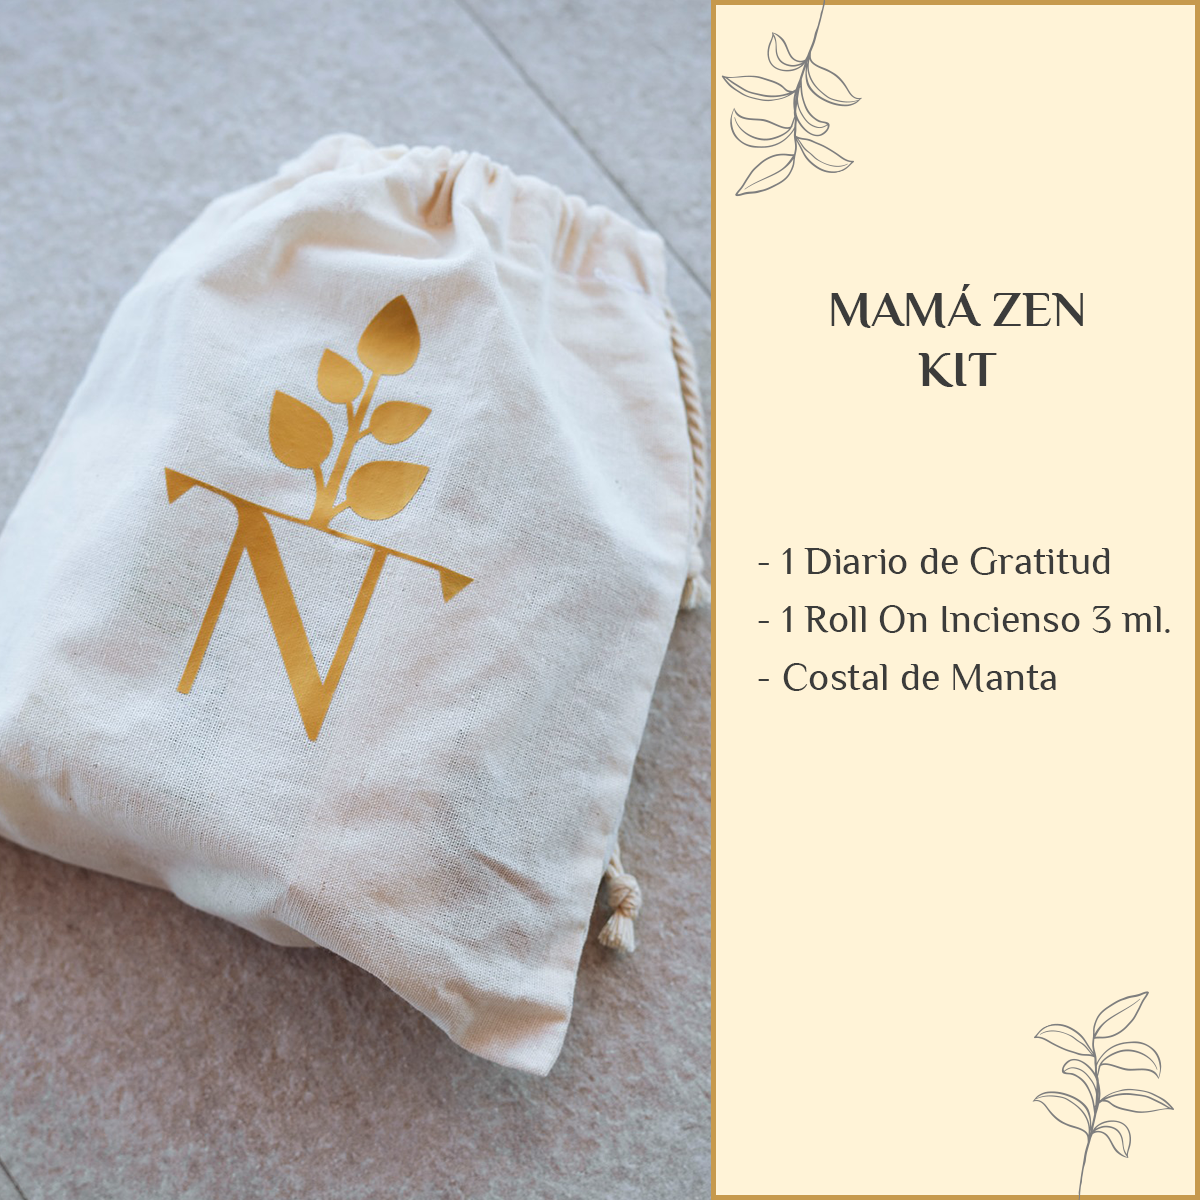 Mamá Zen Kit - Gratitude Journal + 2 Roll On